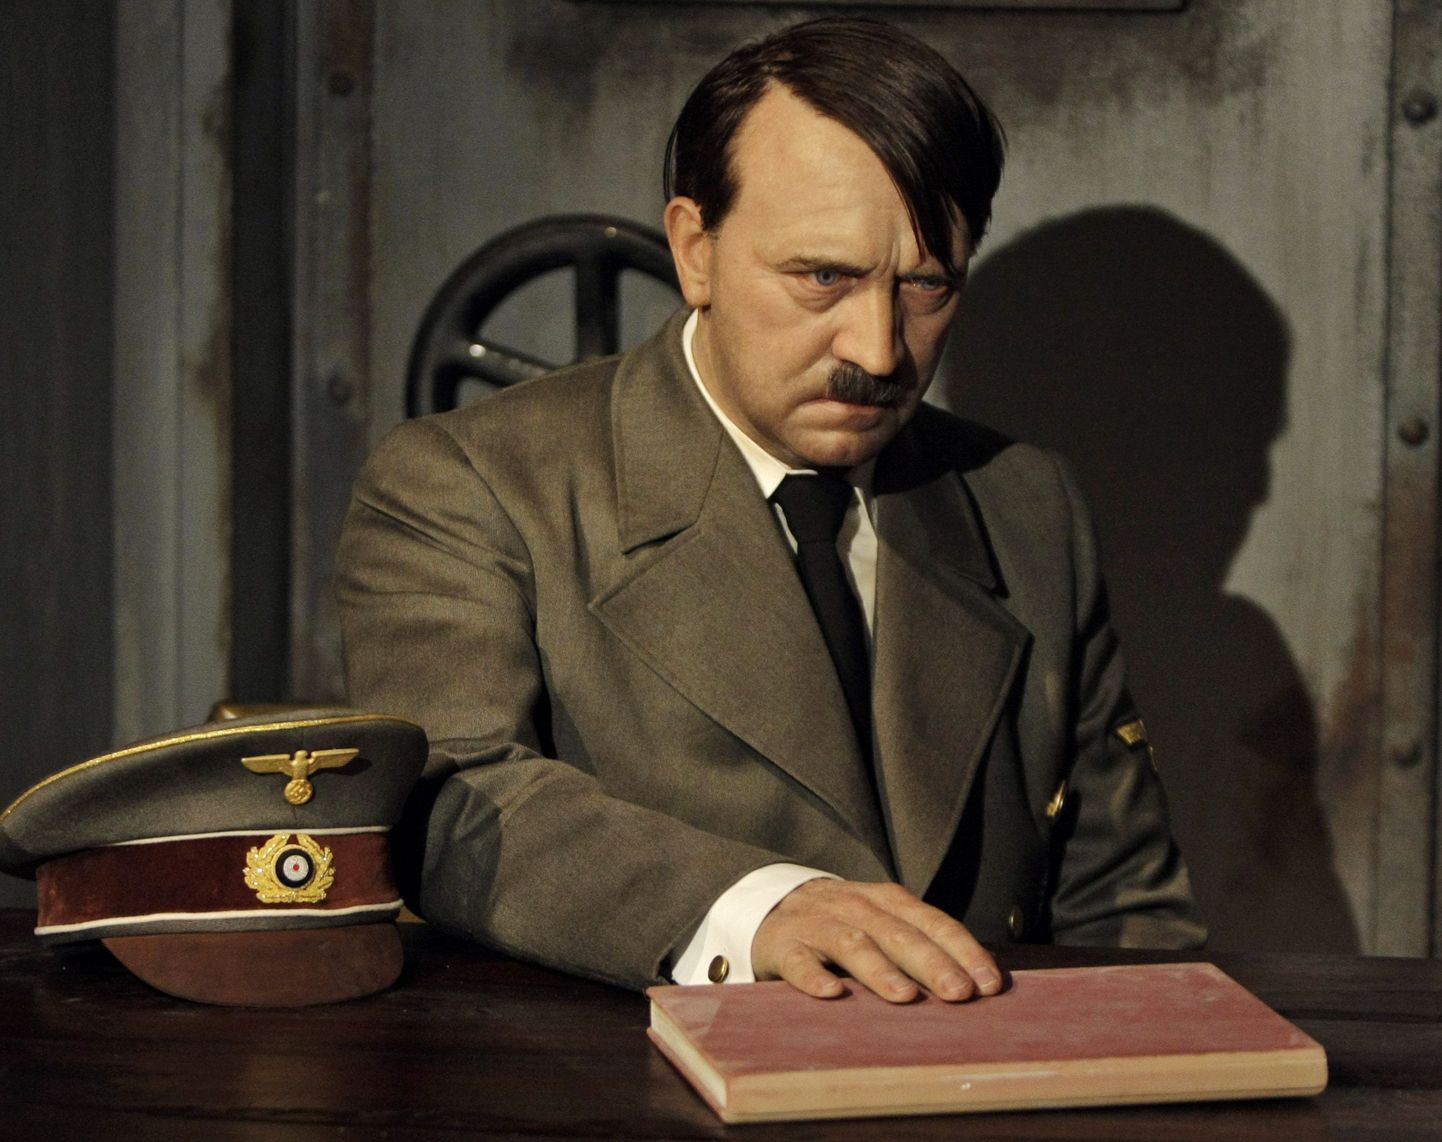 Adolf Hitlerit kujutav vahakuju jäi peast ilma